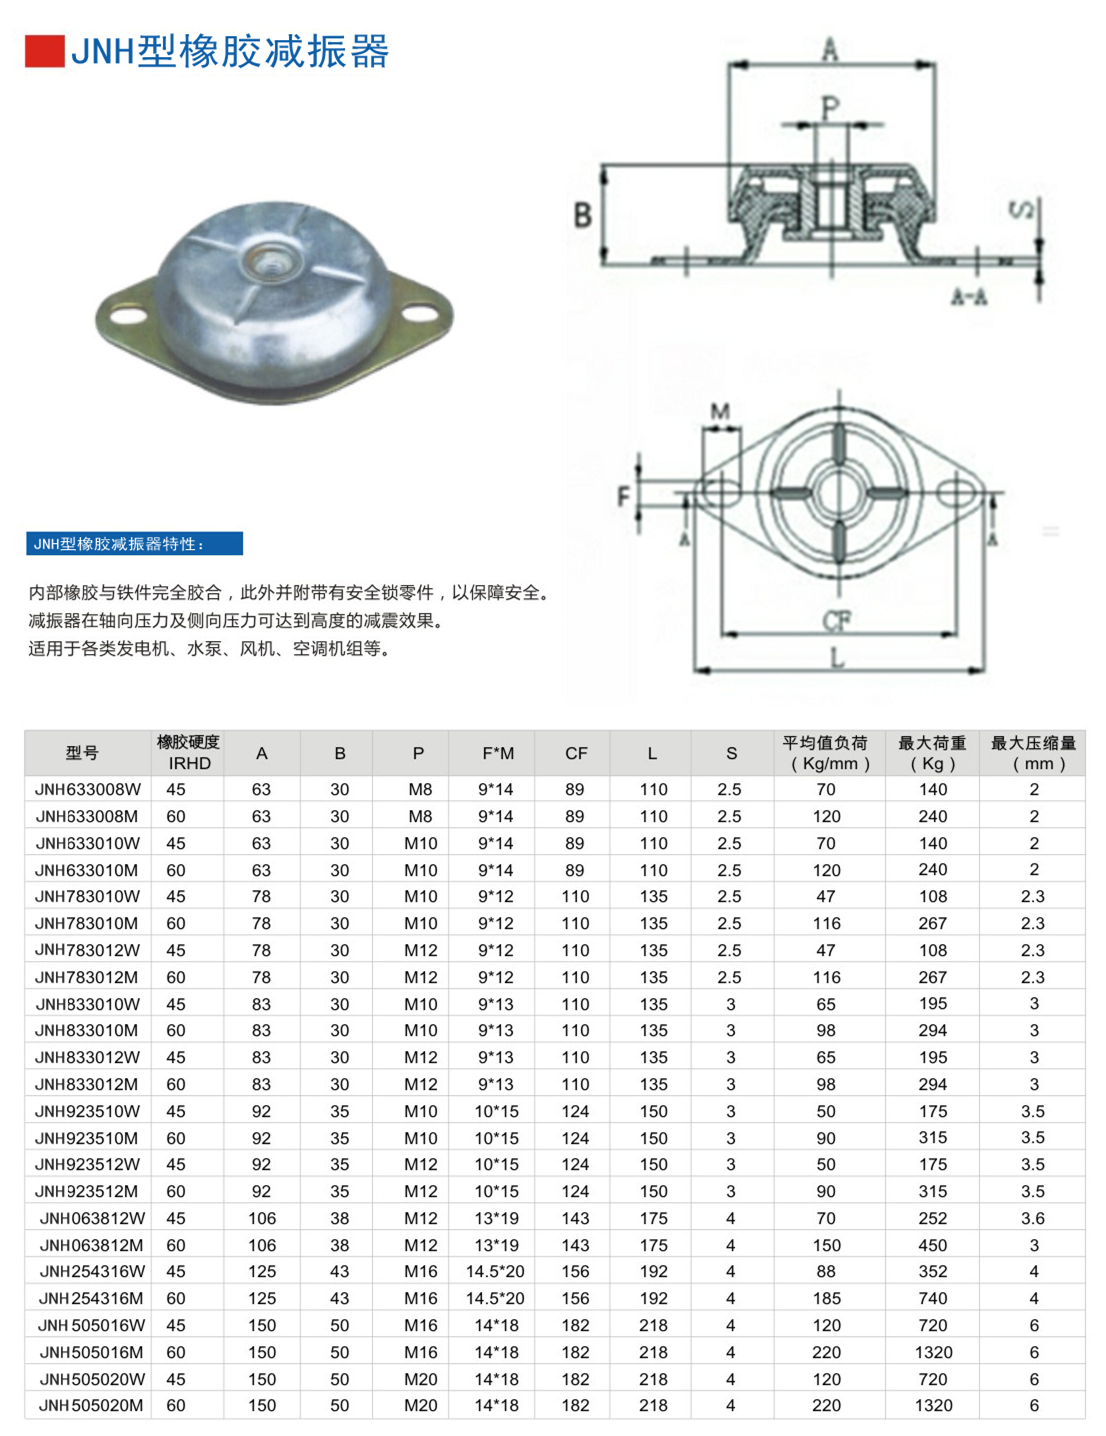 JNH633008M橡胶减震器参数表